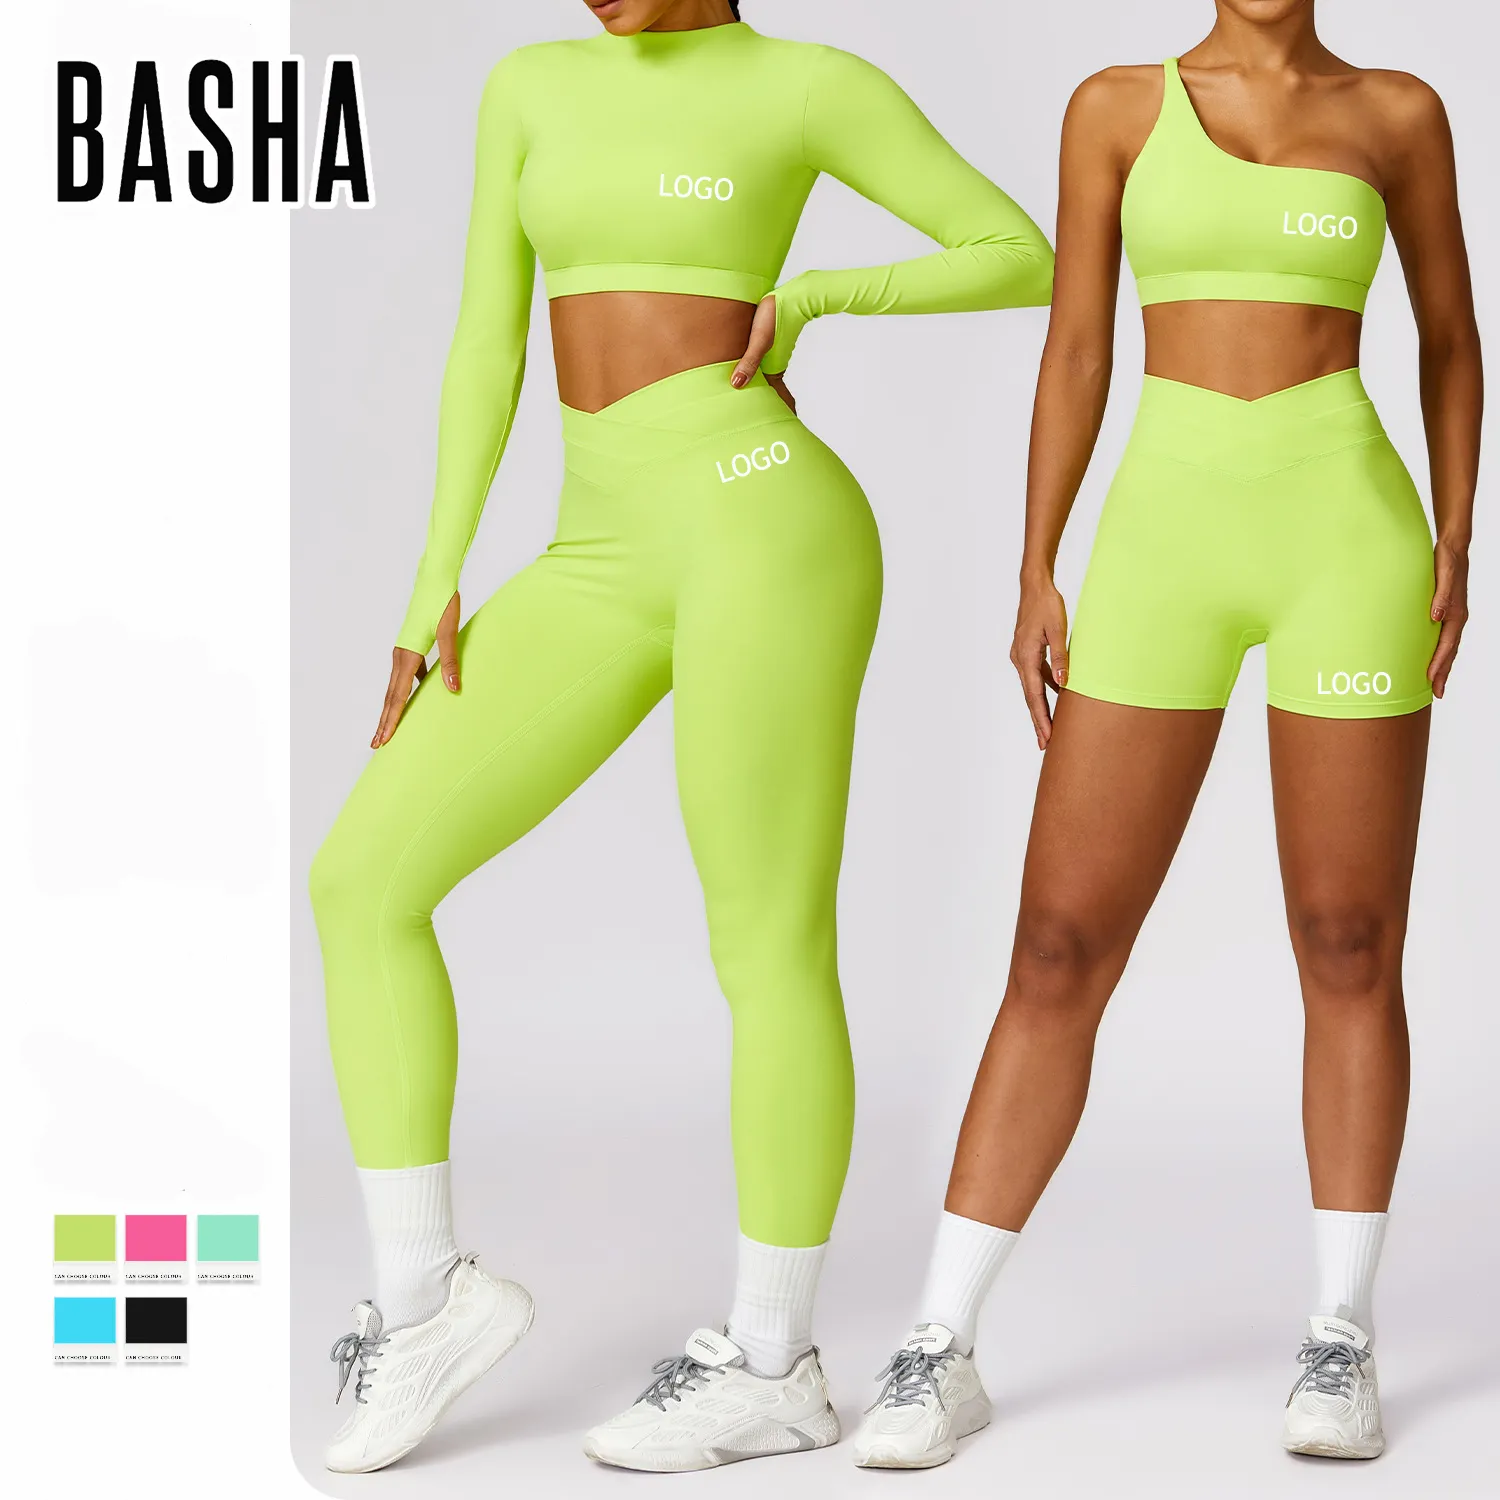 Bashasports primavera nuevo conjunto de yoga espalda de belleza de secado rápido ropa de fitness de manga larga conjunto deportivo ajustado para correr mujeres